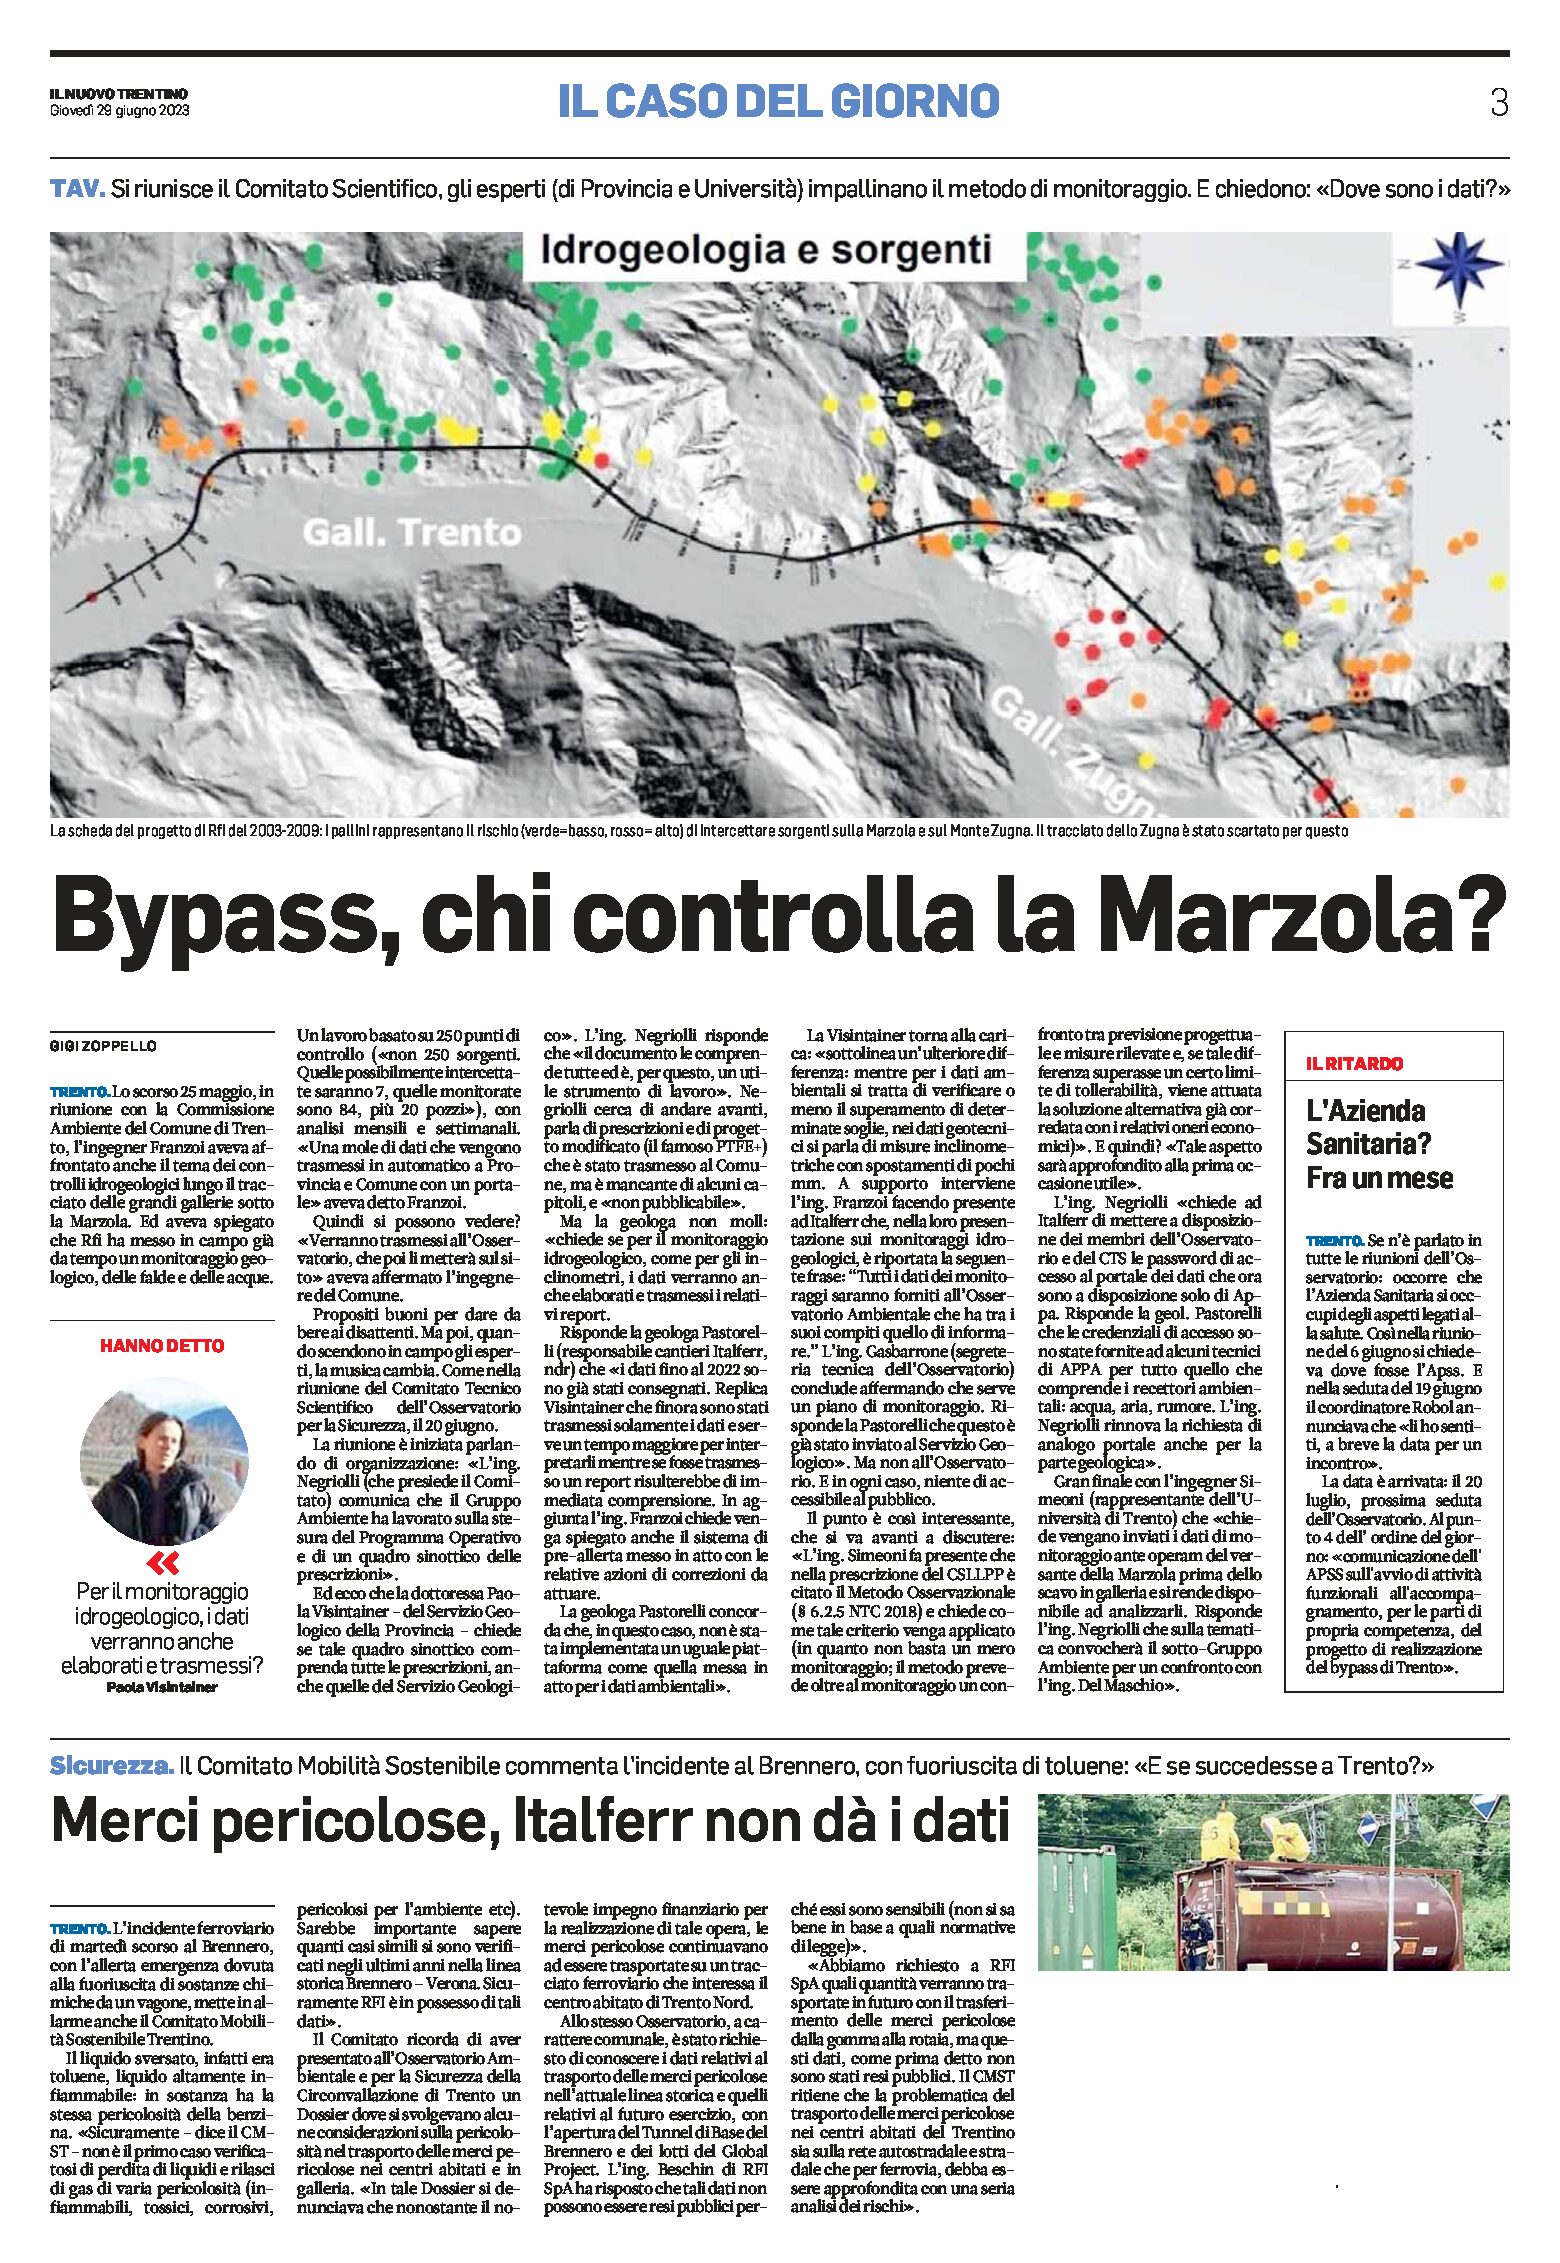 Trento, bypass: chi controlla la Marzola?